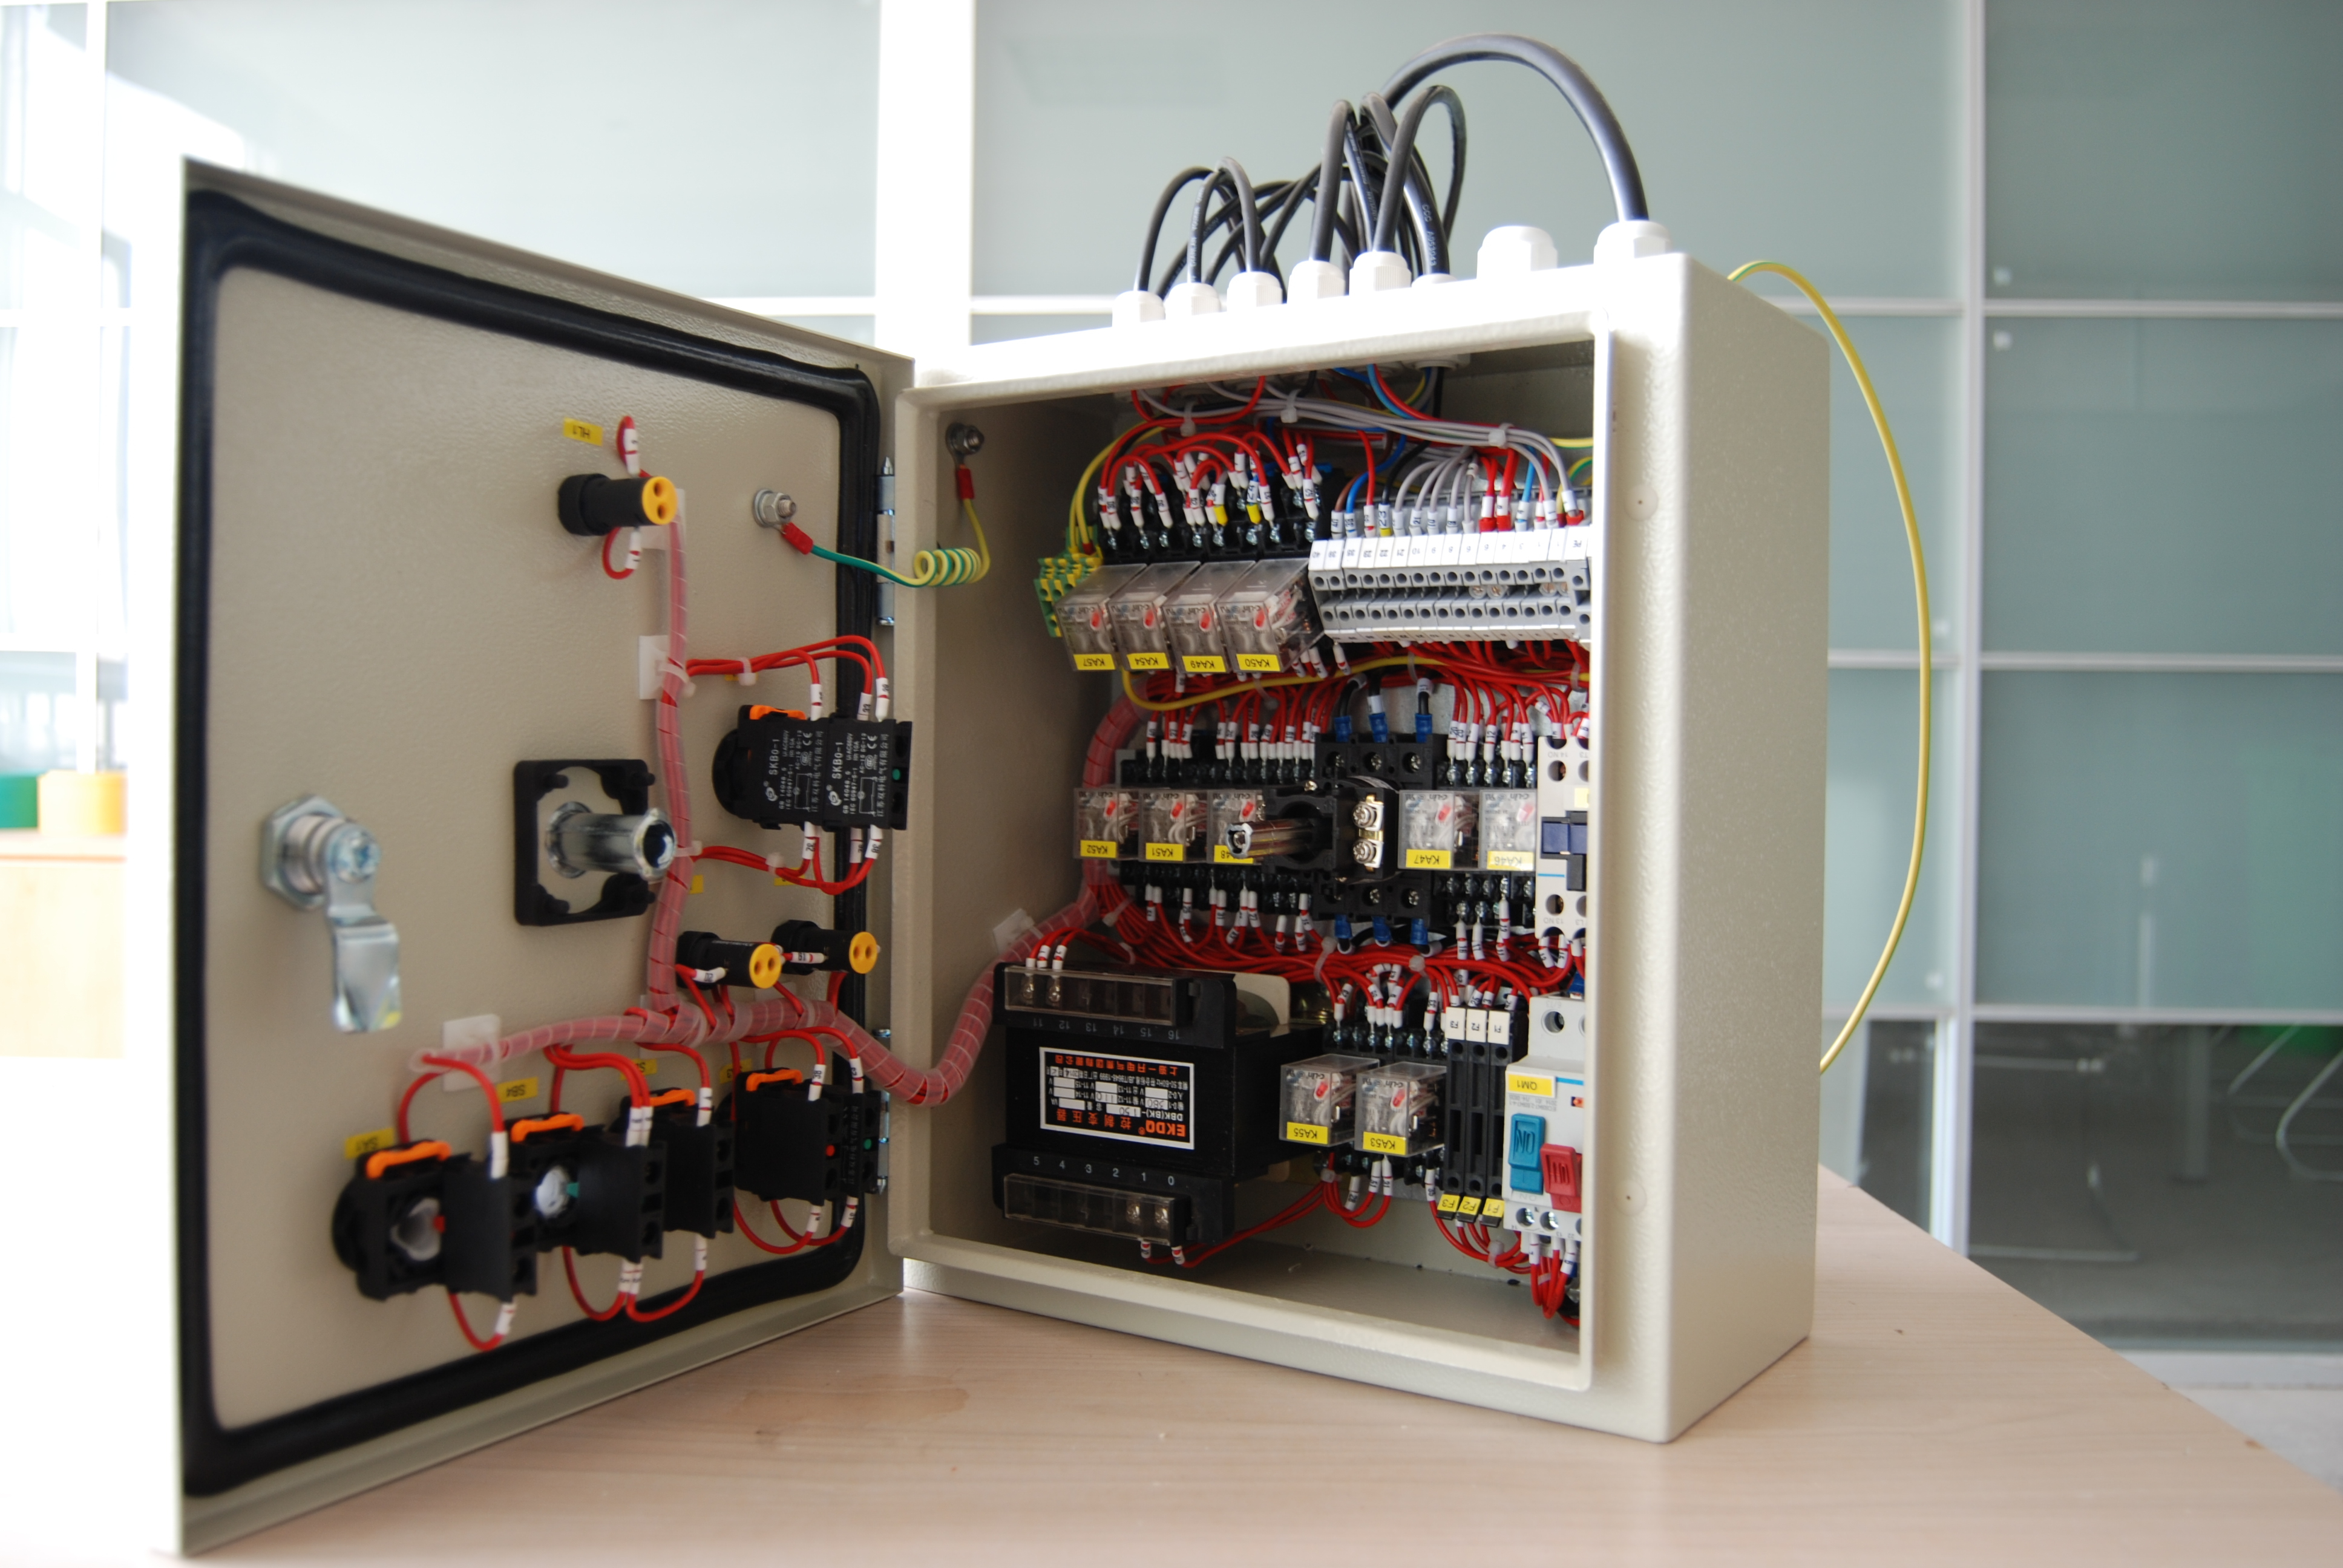 TIBOX教你区分等级1 配电箱和等级2 配电箱的区别